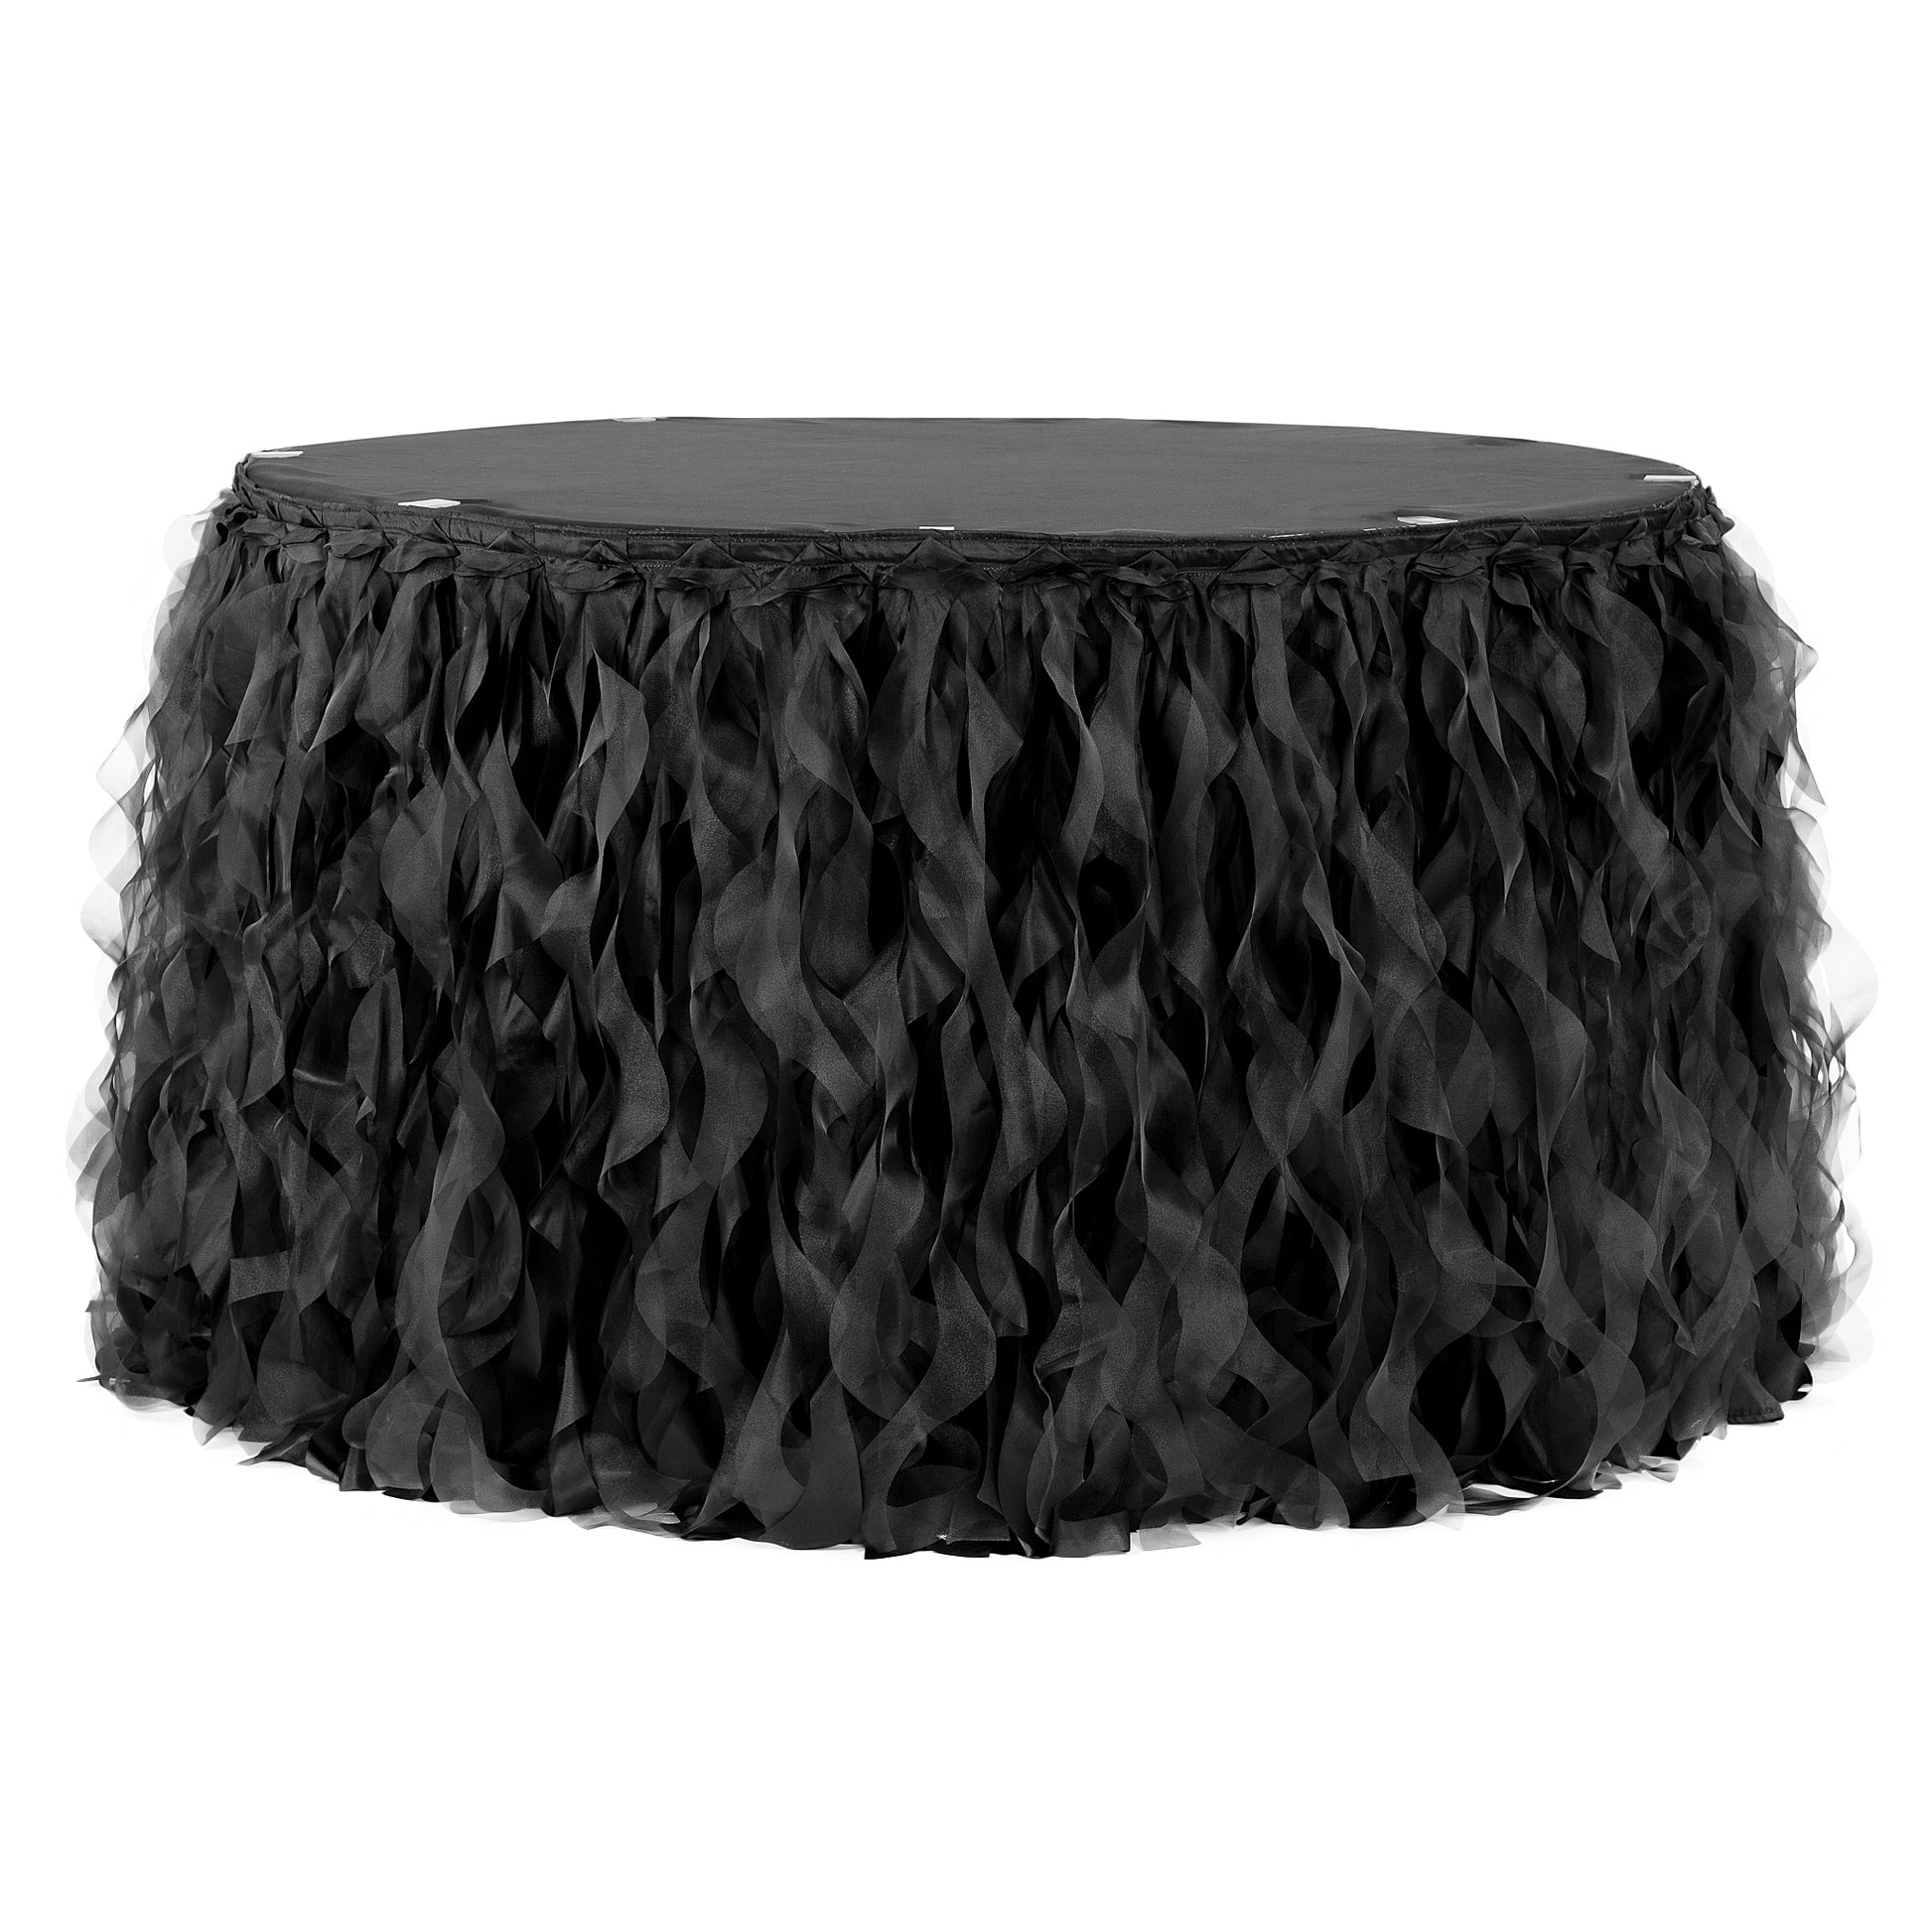 Curly Willow 17ft Table Skirt - Black - CV Linens